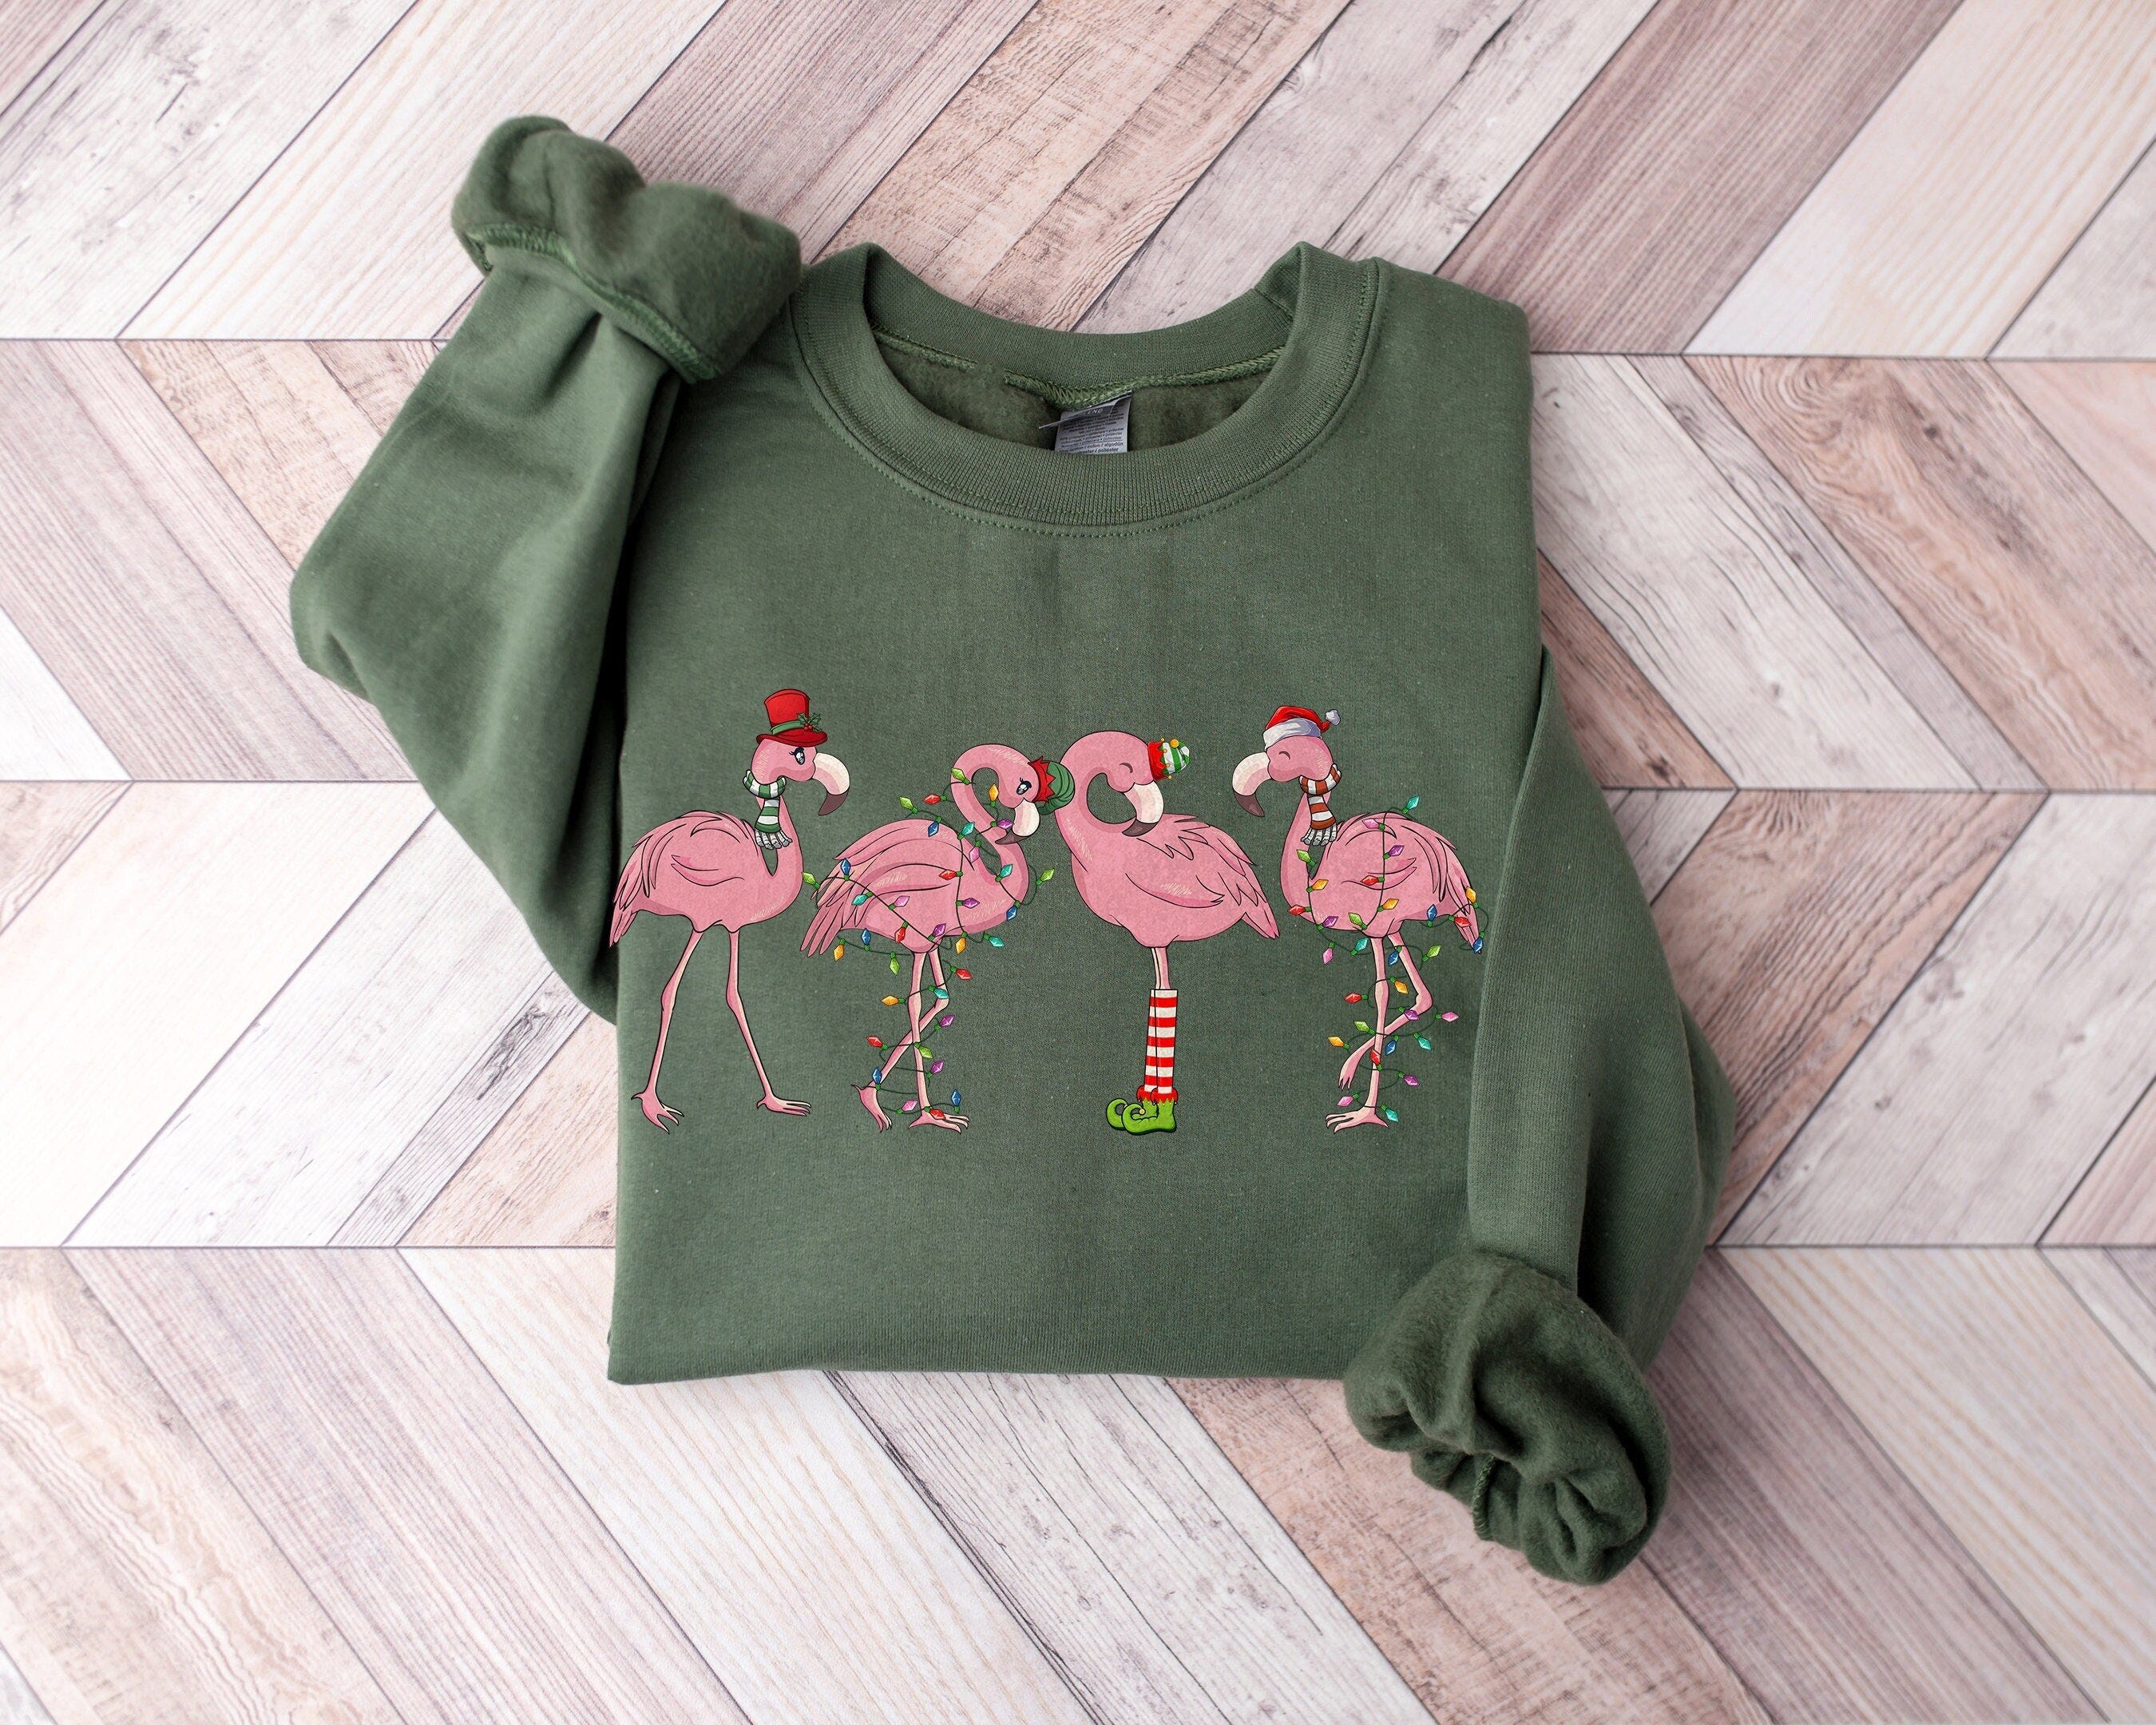 Flamingo Christmas  shirt, Flamingo Christmas Shirt For Women,Flamingo Merry Christmas Sweatshirt,Flamingo Lover Gift,Funny Flamingo  Shirt